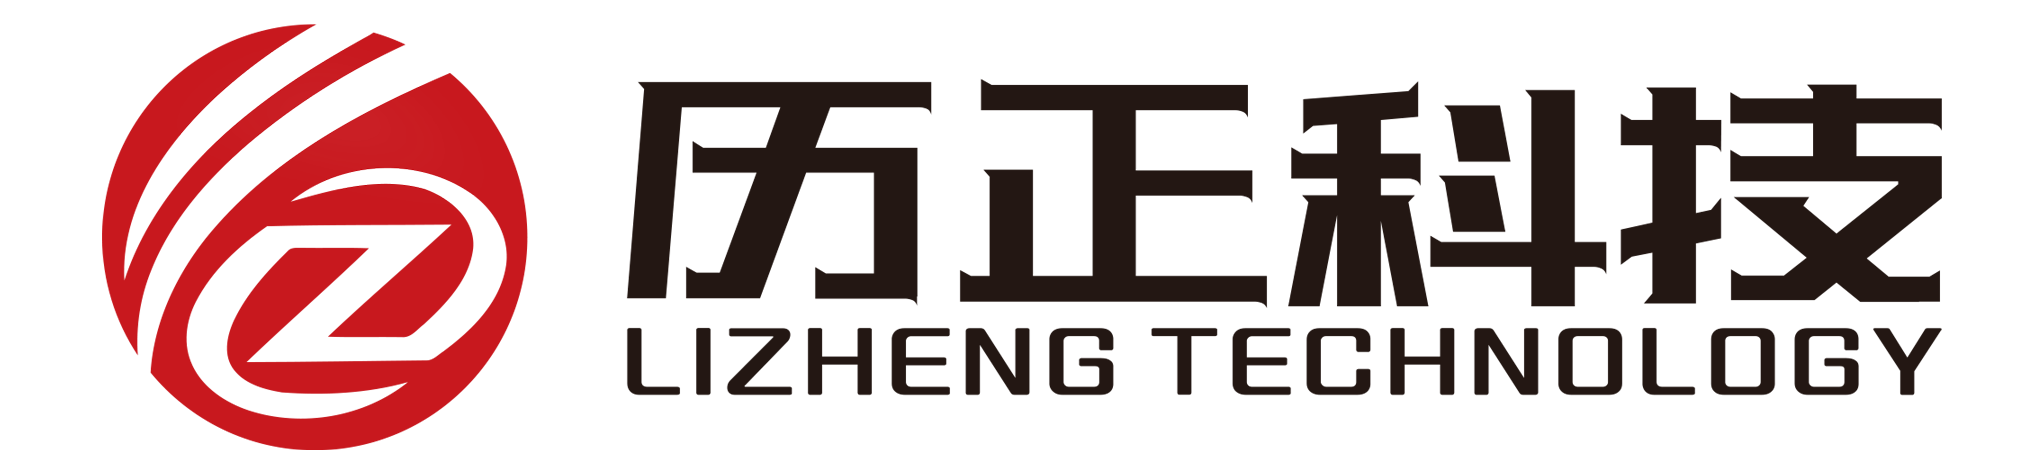 Beijing Lizheng Technology Co., Ltd